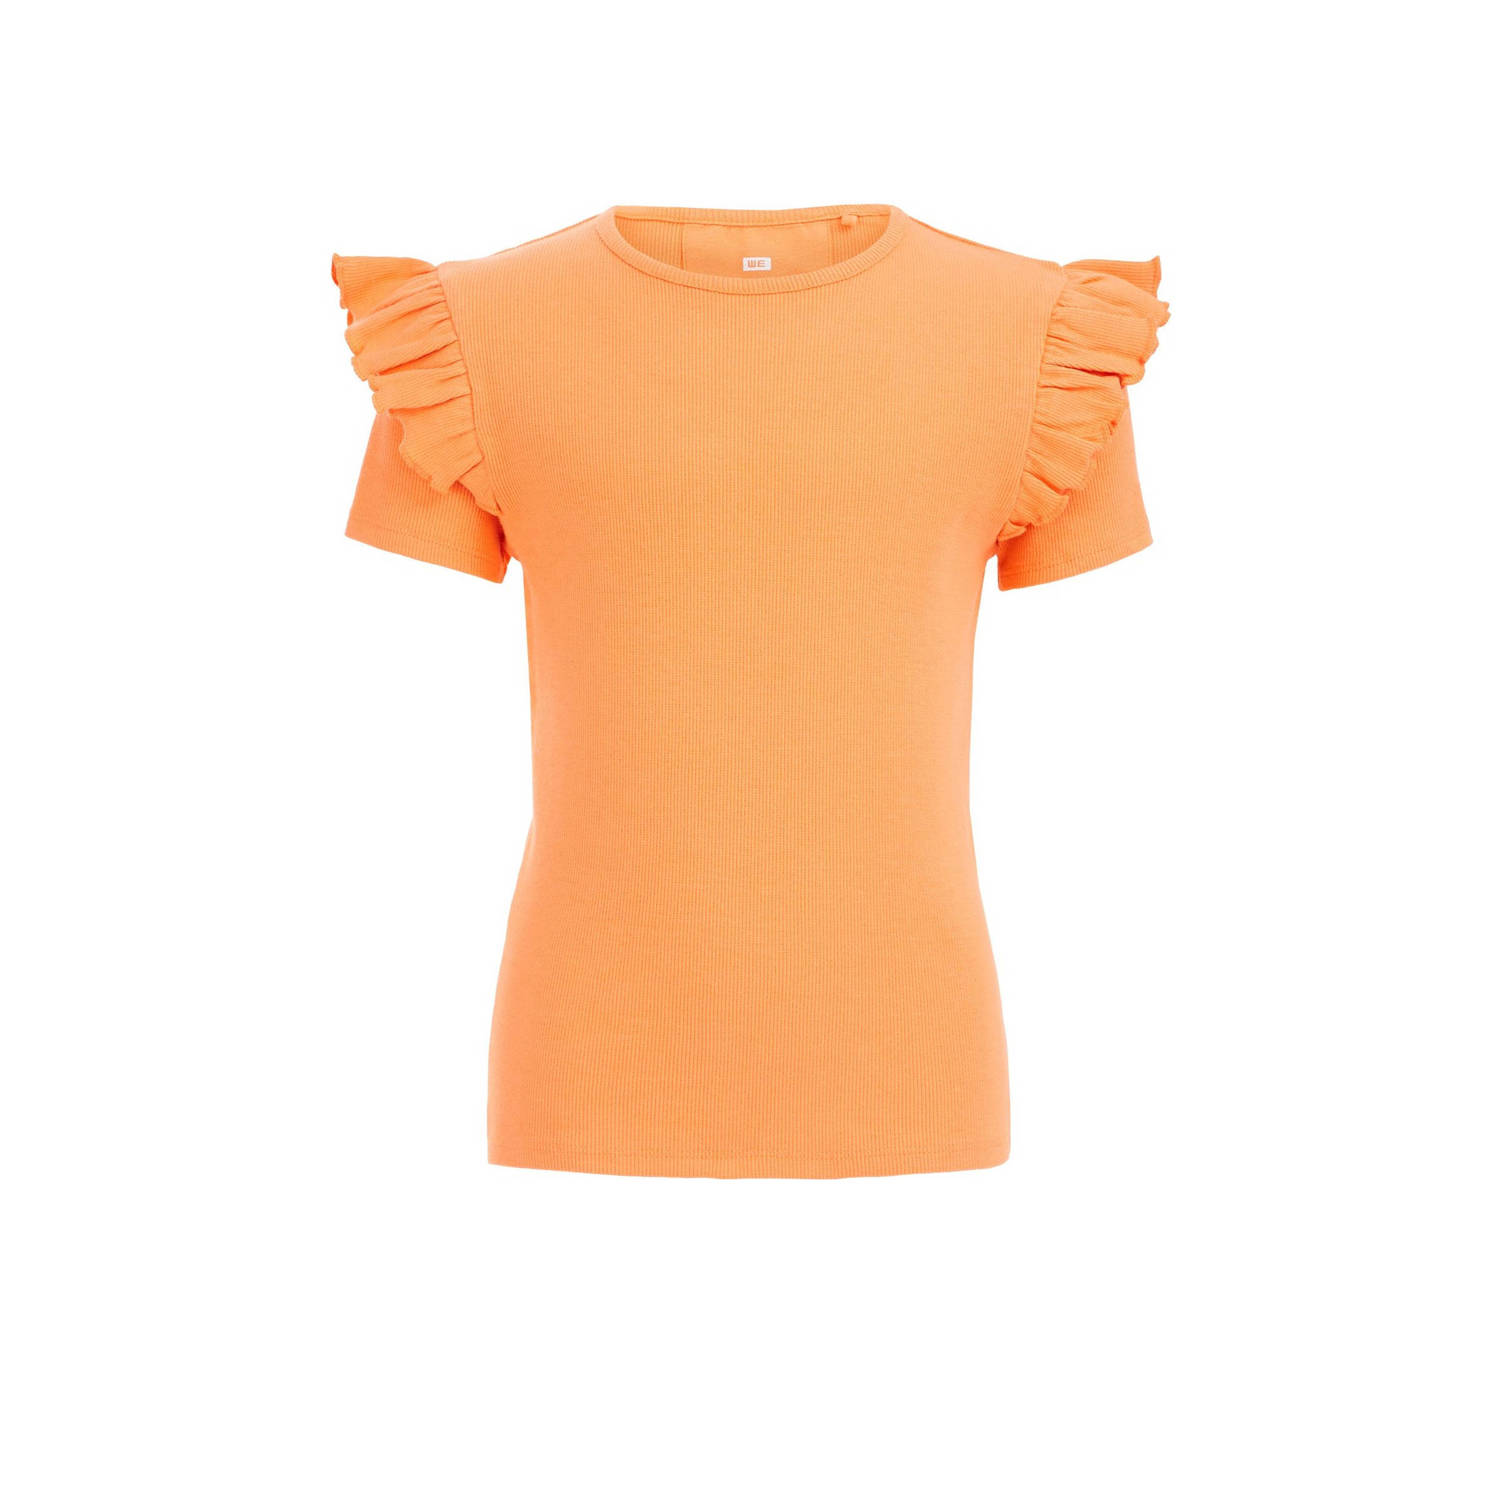 WE Fashion T-shirt oranje Meisjes Stretchkatoen Ronde hals Effen 110 116